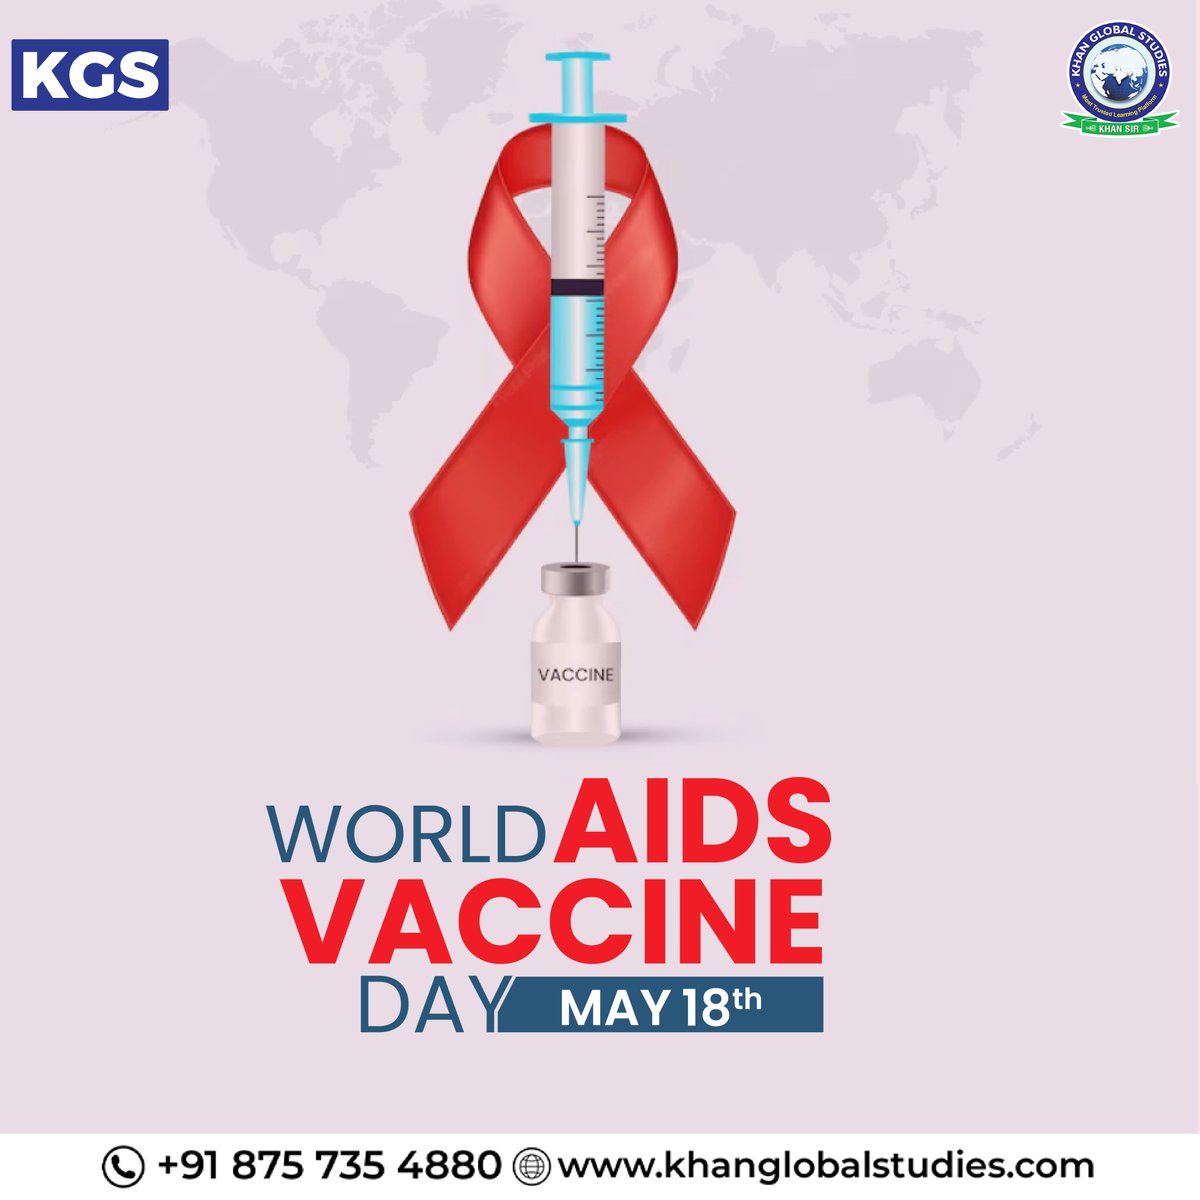 आइये World AIDS Vaccine Day के अवसर पर मिलकर लोगों को शिक्षित और जागरूक बनाने का संकल्प लें और एड्स के बीमारी से पूरे विश्व को बचाएँ। 💉
.
.
.
#worldaidsvaccineday #AIDS #aidsvaccine #vaccine #aidsawareness #worldaidsvaccineday2024 #aidsvaccineday #khansir #kgsias #upsc